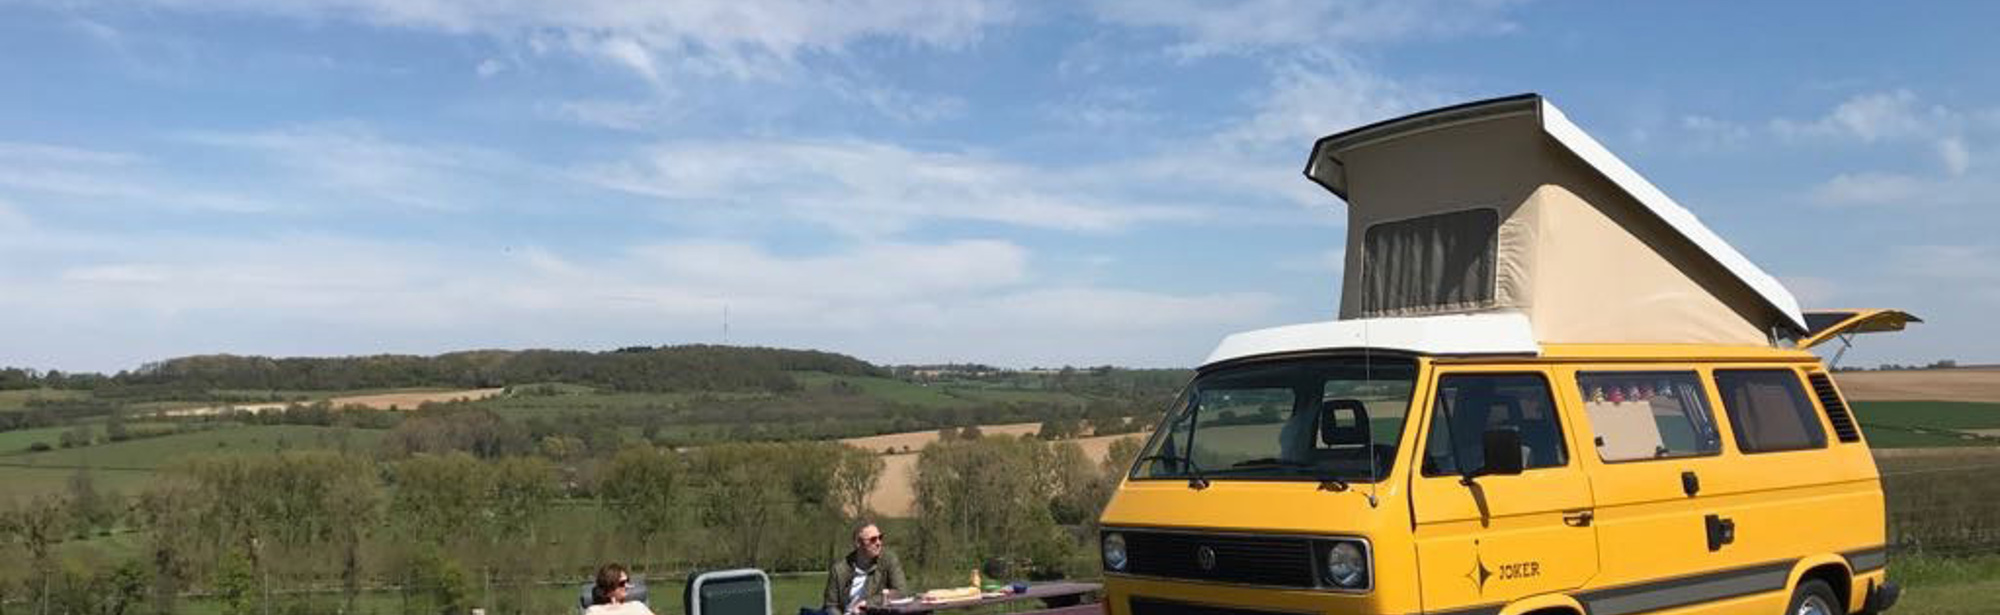 Maud de Graaf aan het picknicken op de Gulperberg met gele Volkswagen